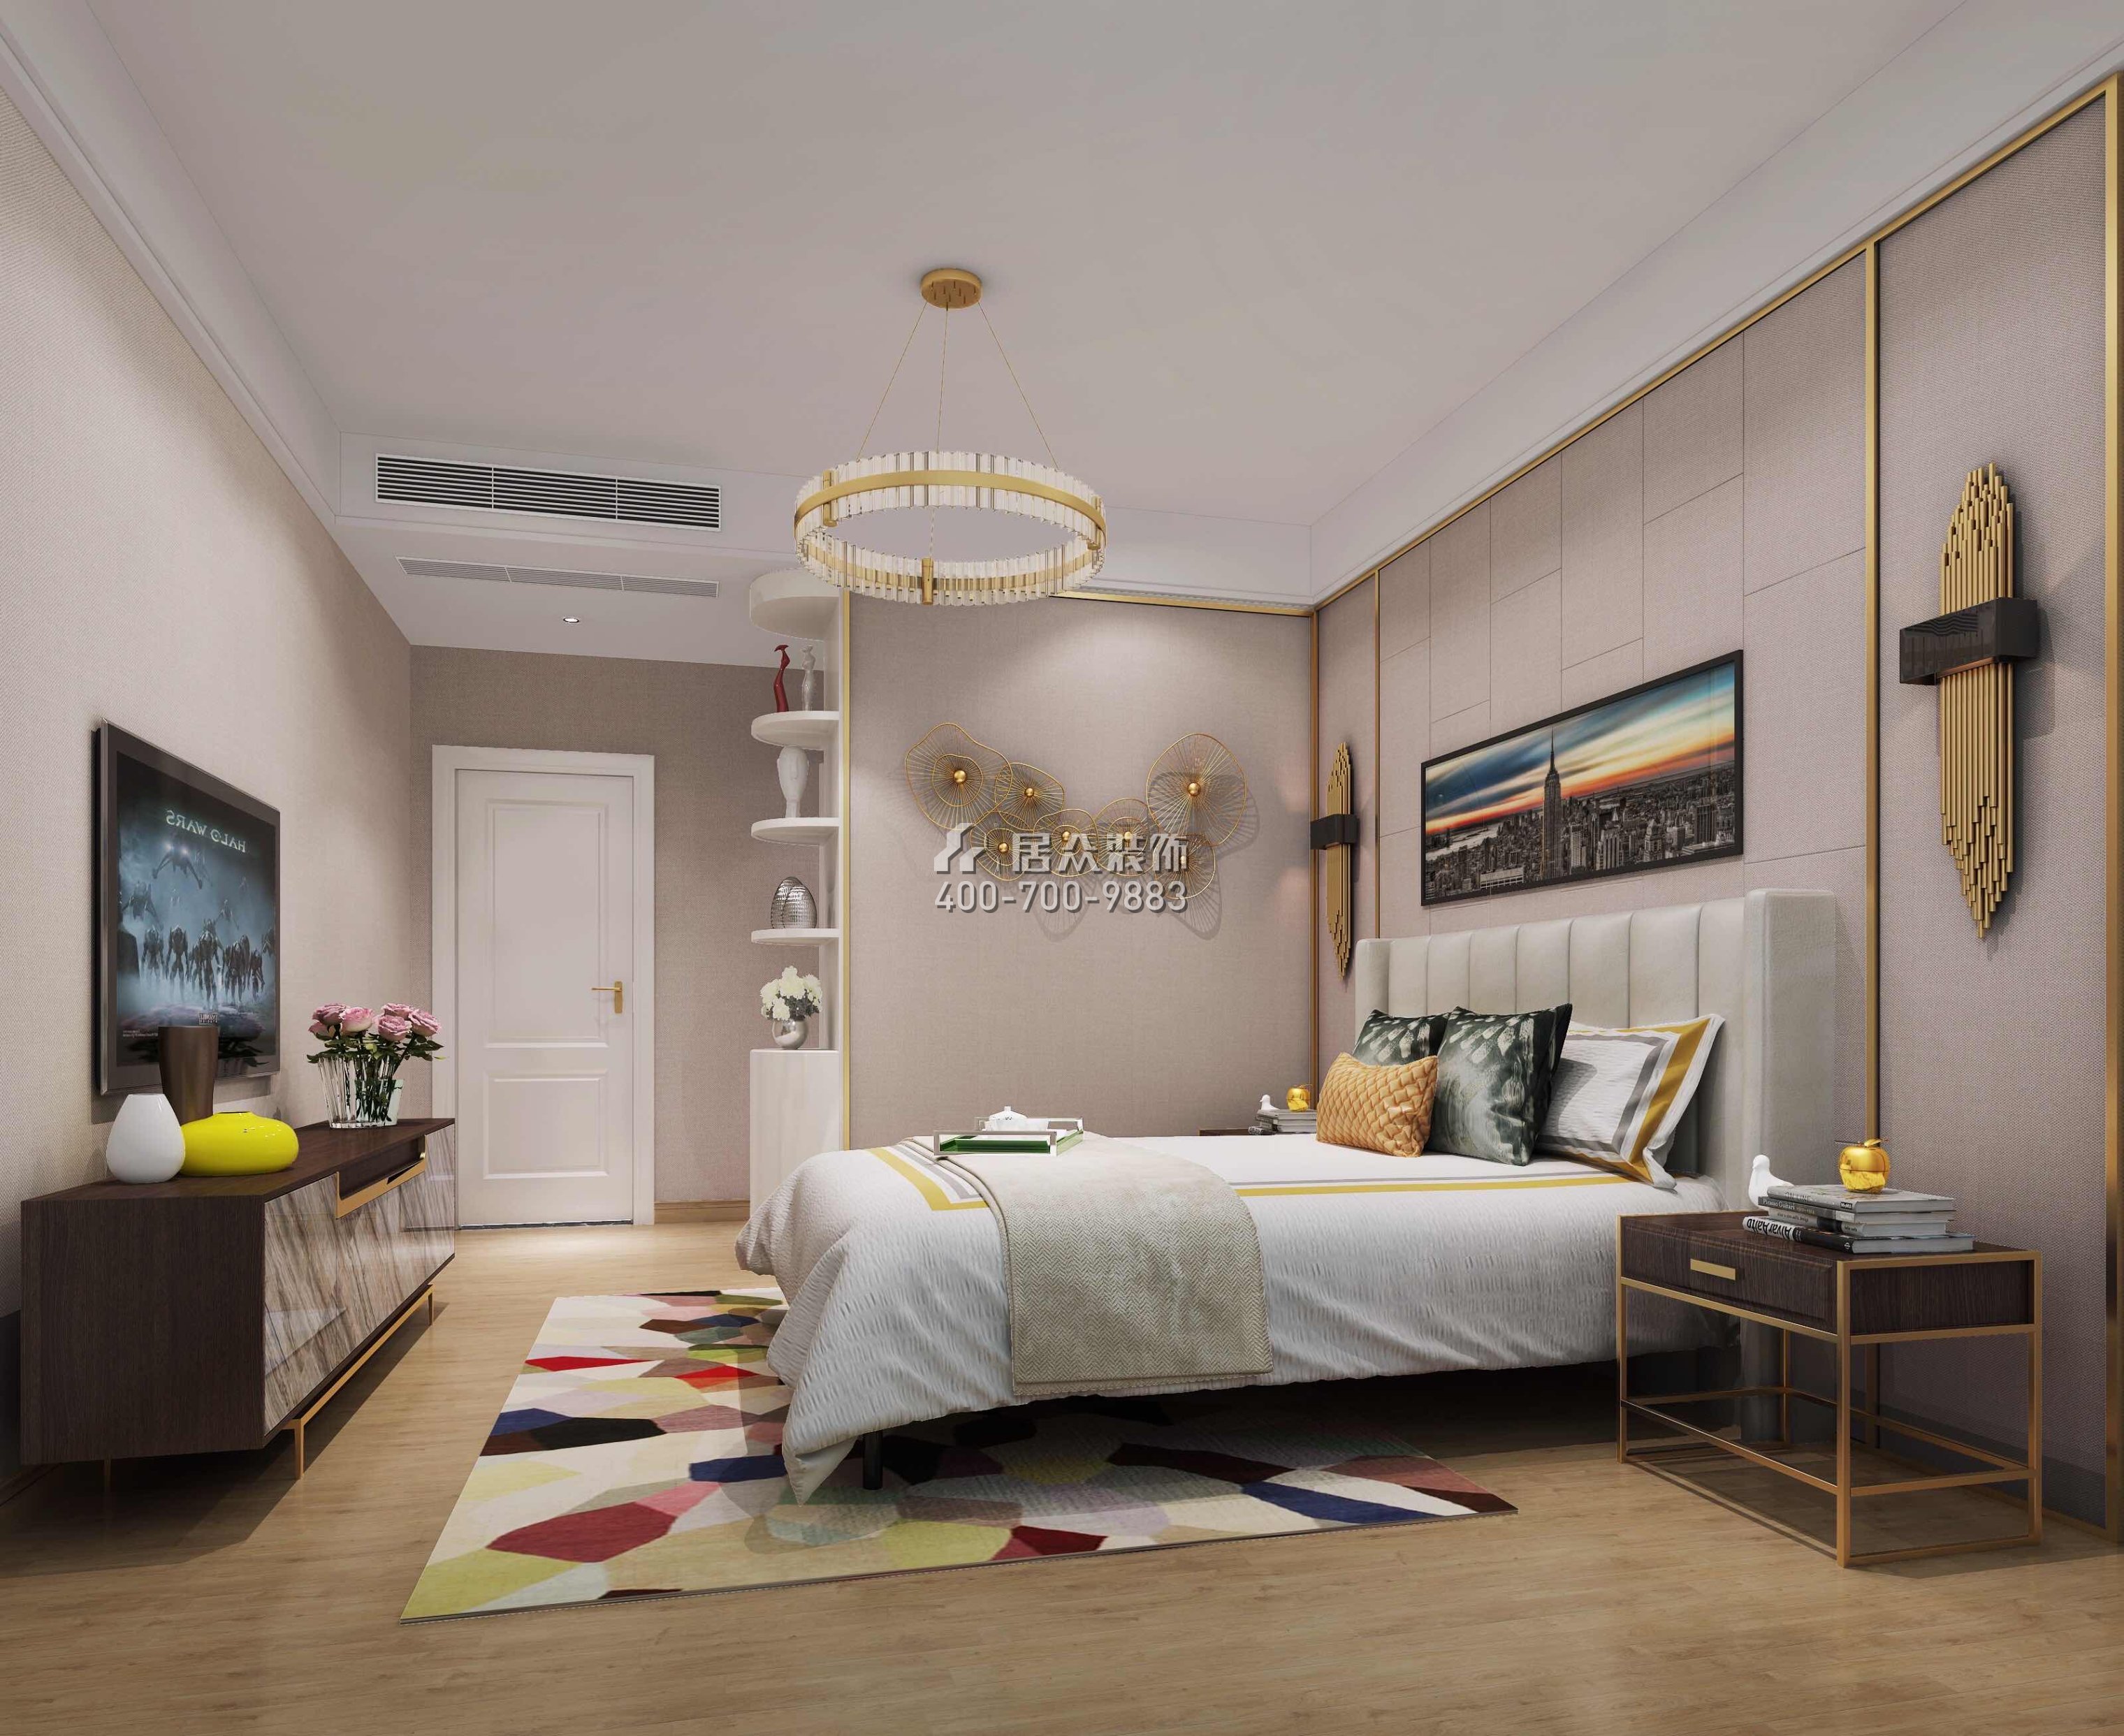 城市山谷143平方米现代简约风格平层户型卧室装修效果图